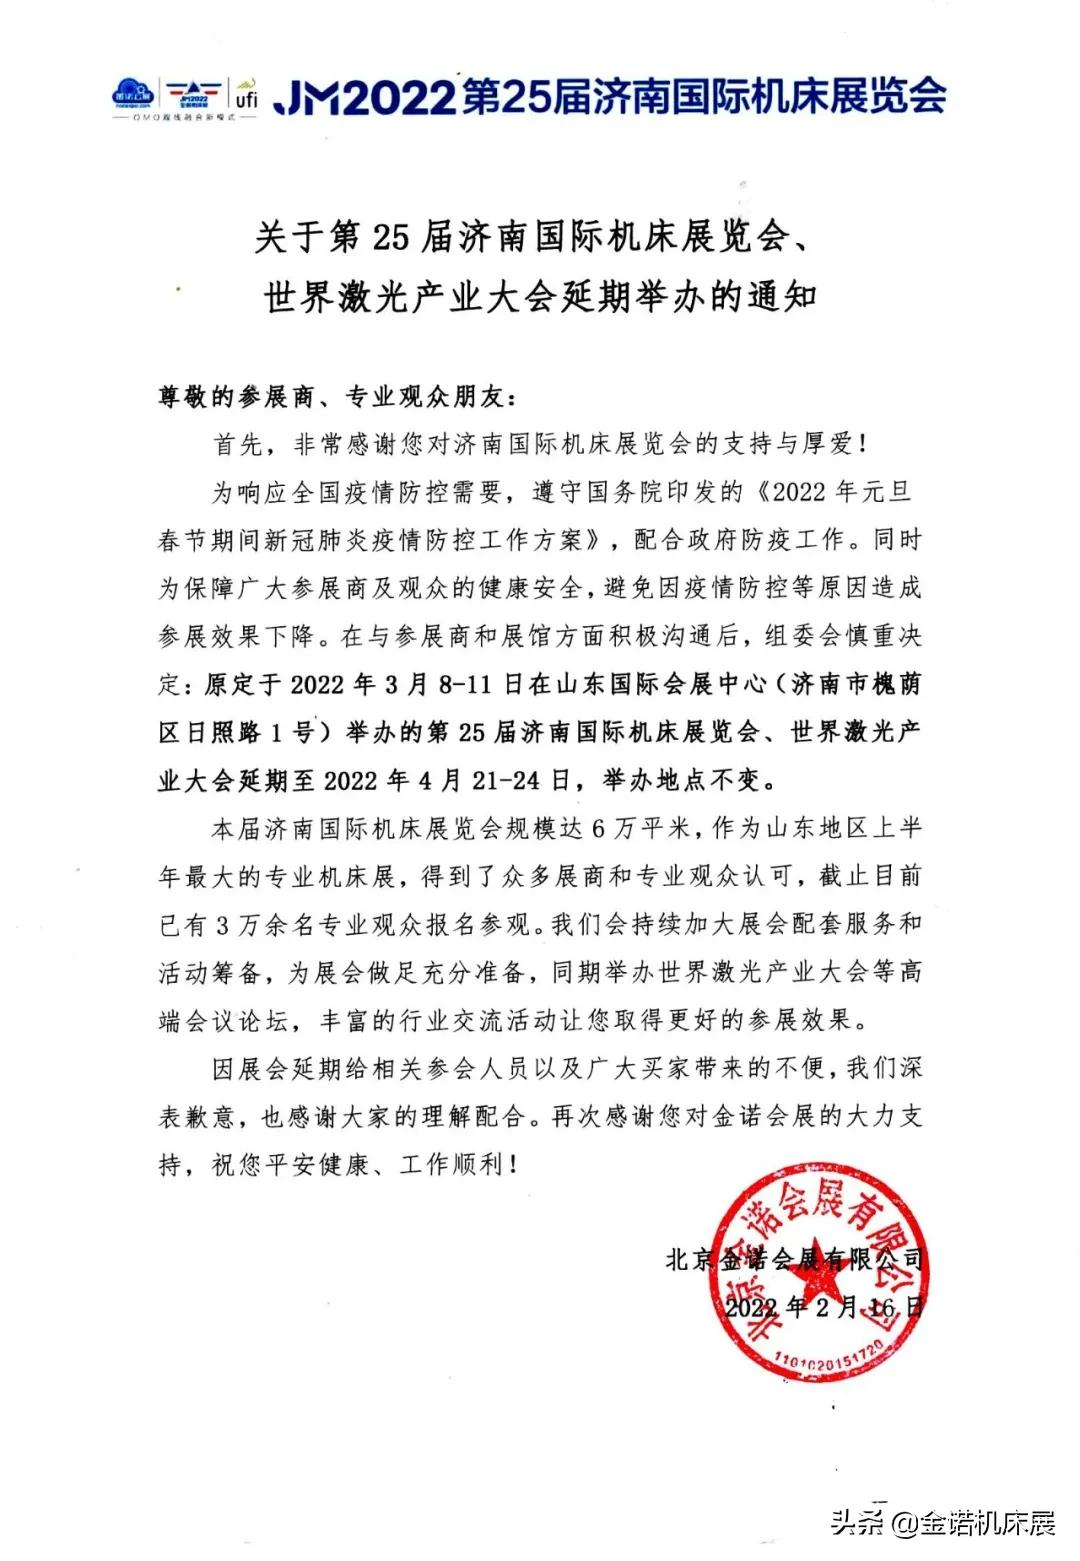 「重要通知」关于第25届济南国际机床展览会延期举办的通知